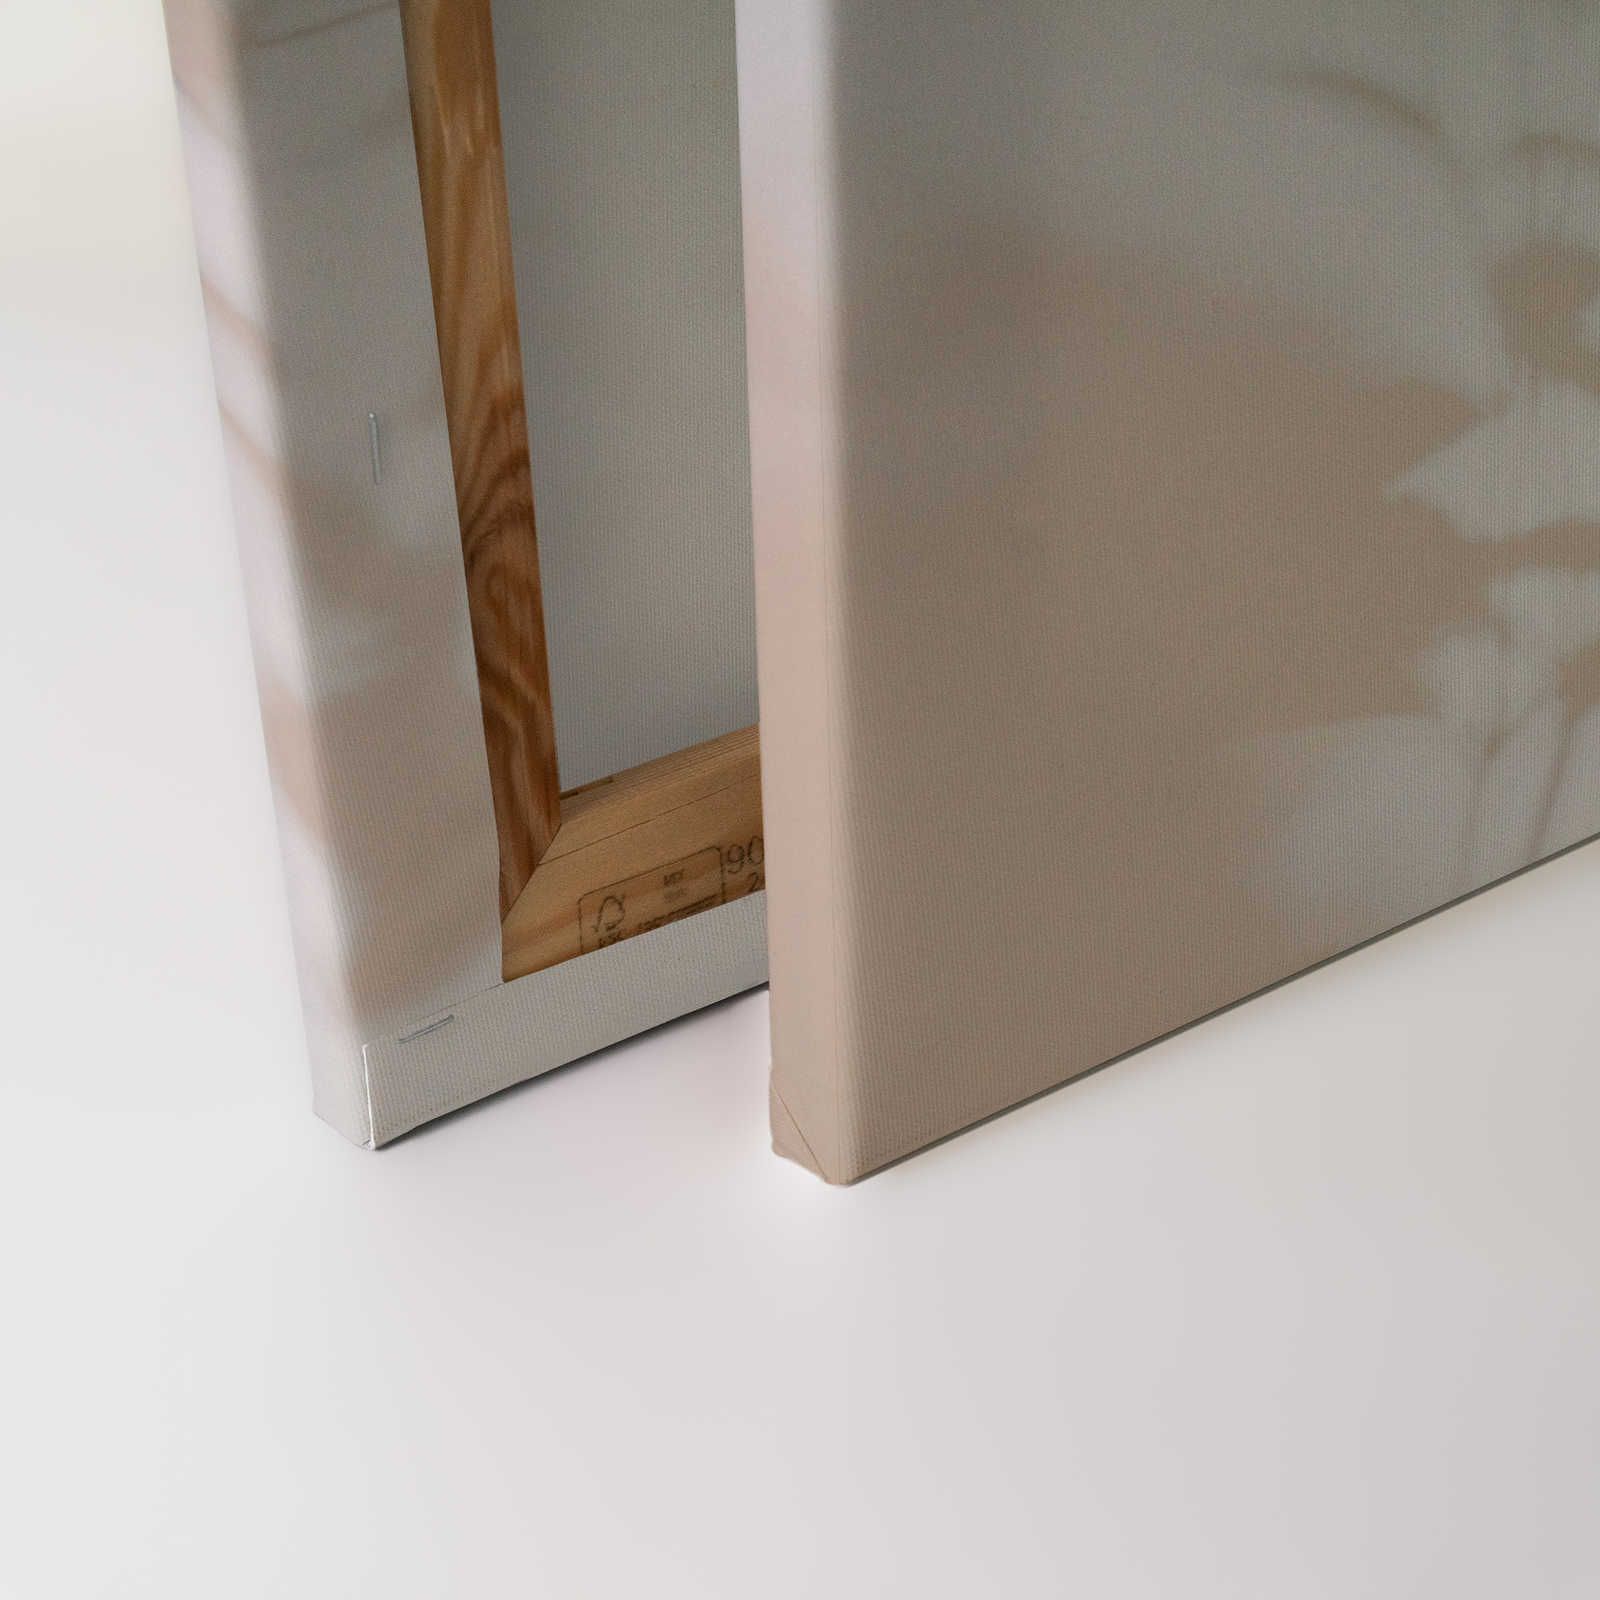             Shadow Room 1 - Natur Leinwandbild Beige & Weiß, verblasstes Design – 1,20 m x 0,80 m
        